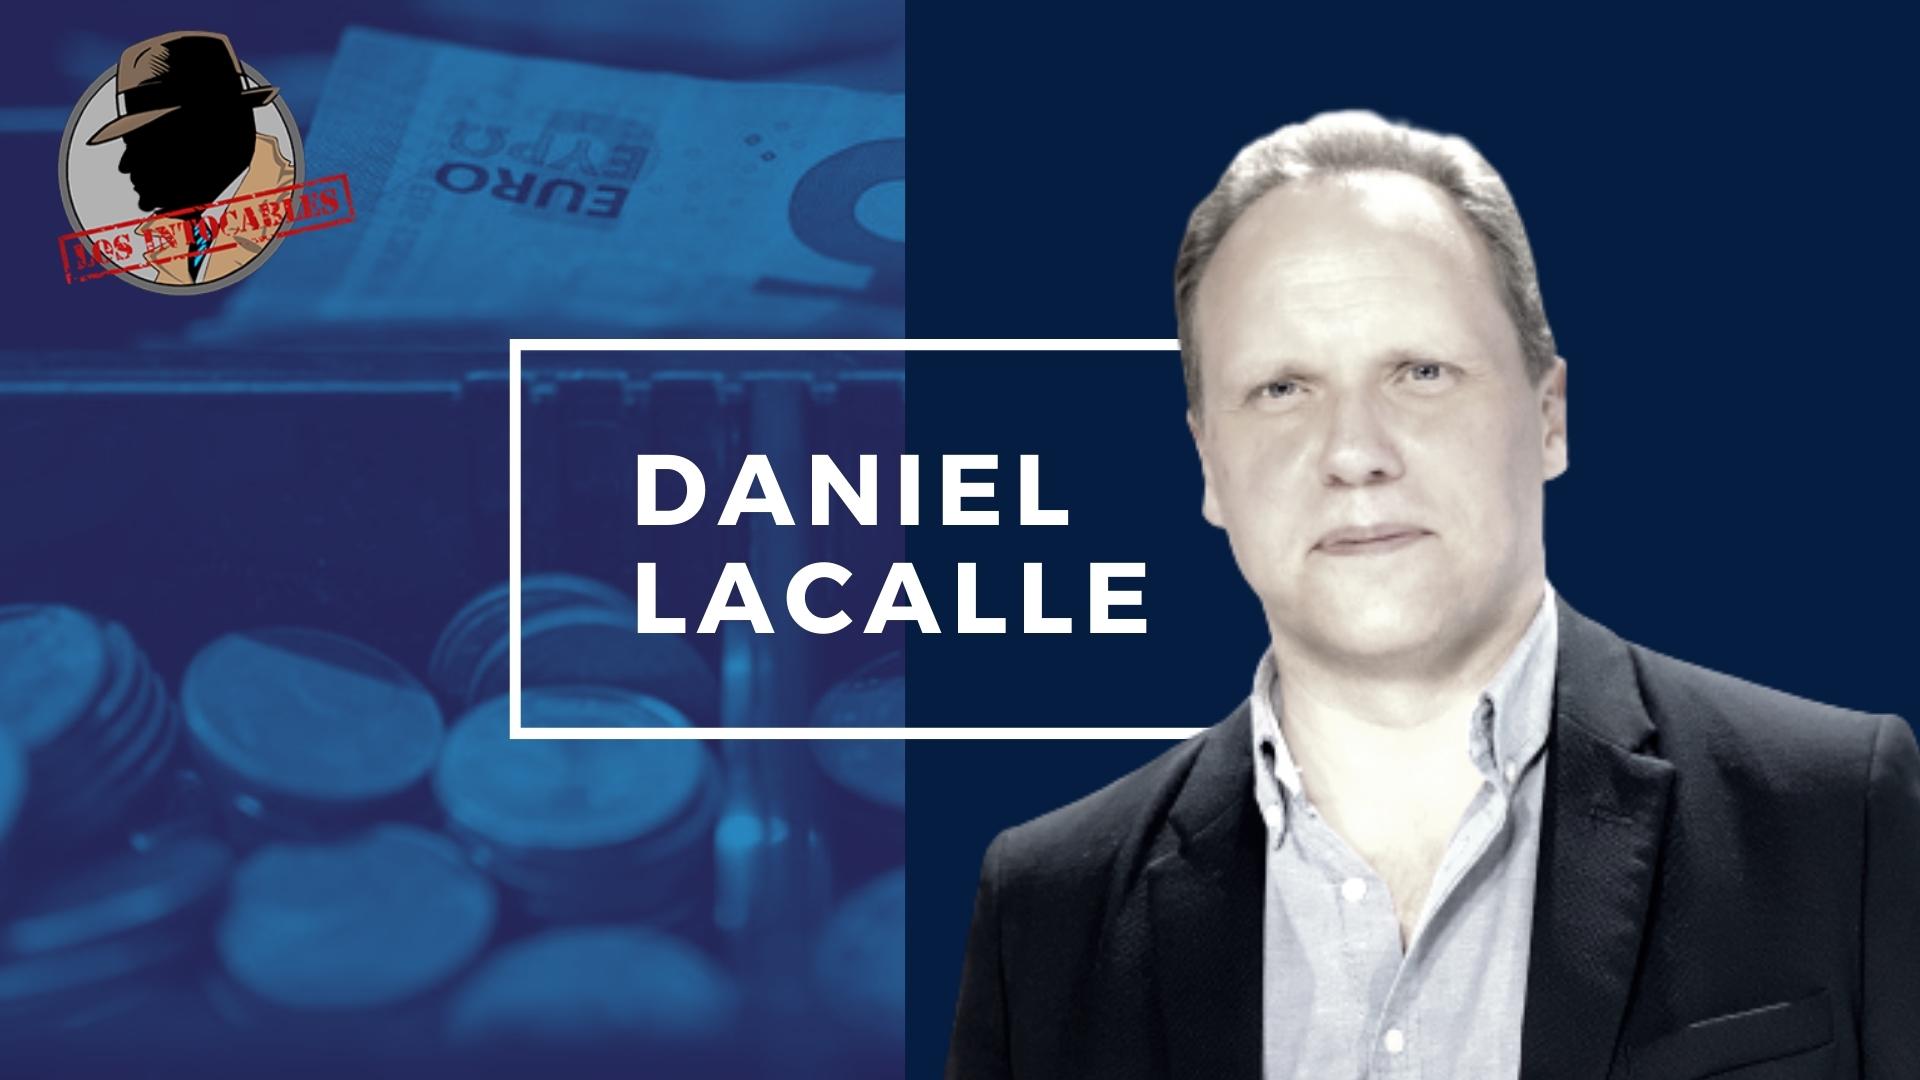 Daniel Lacalle